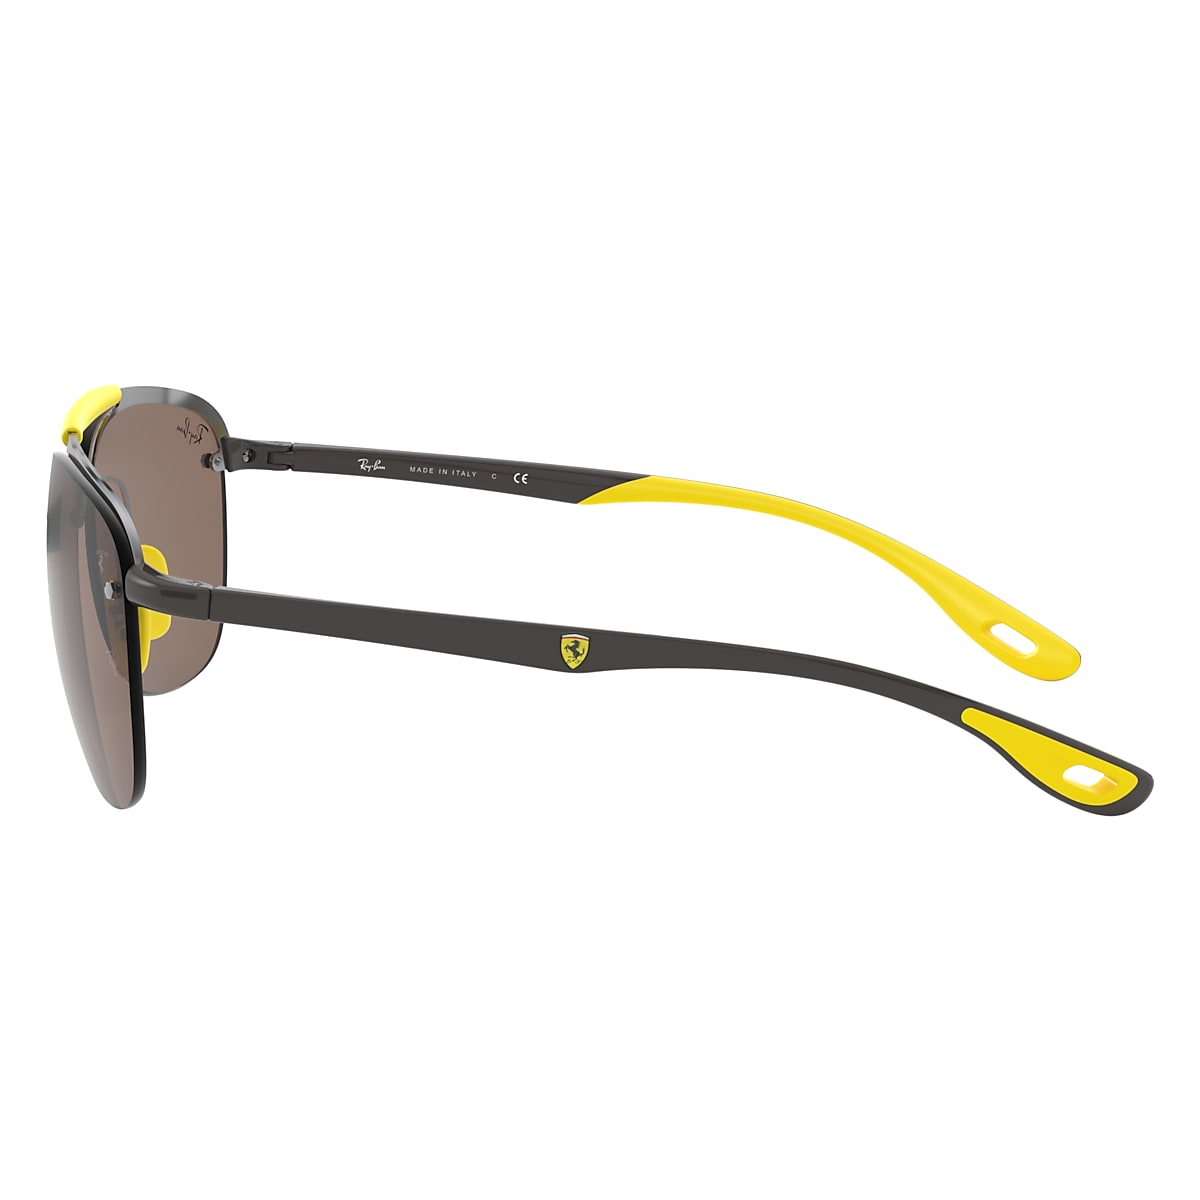 Rb3662m Scuderia Ferrari Collection Sunglasses in Gunmetal and Dark Brown |  Ray-Ban®